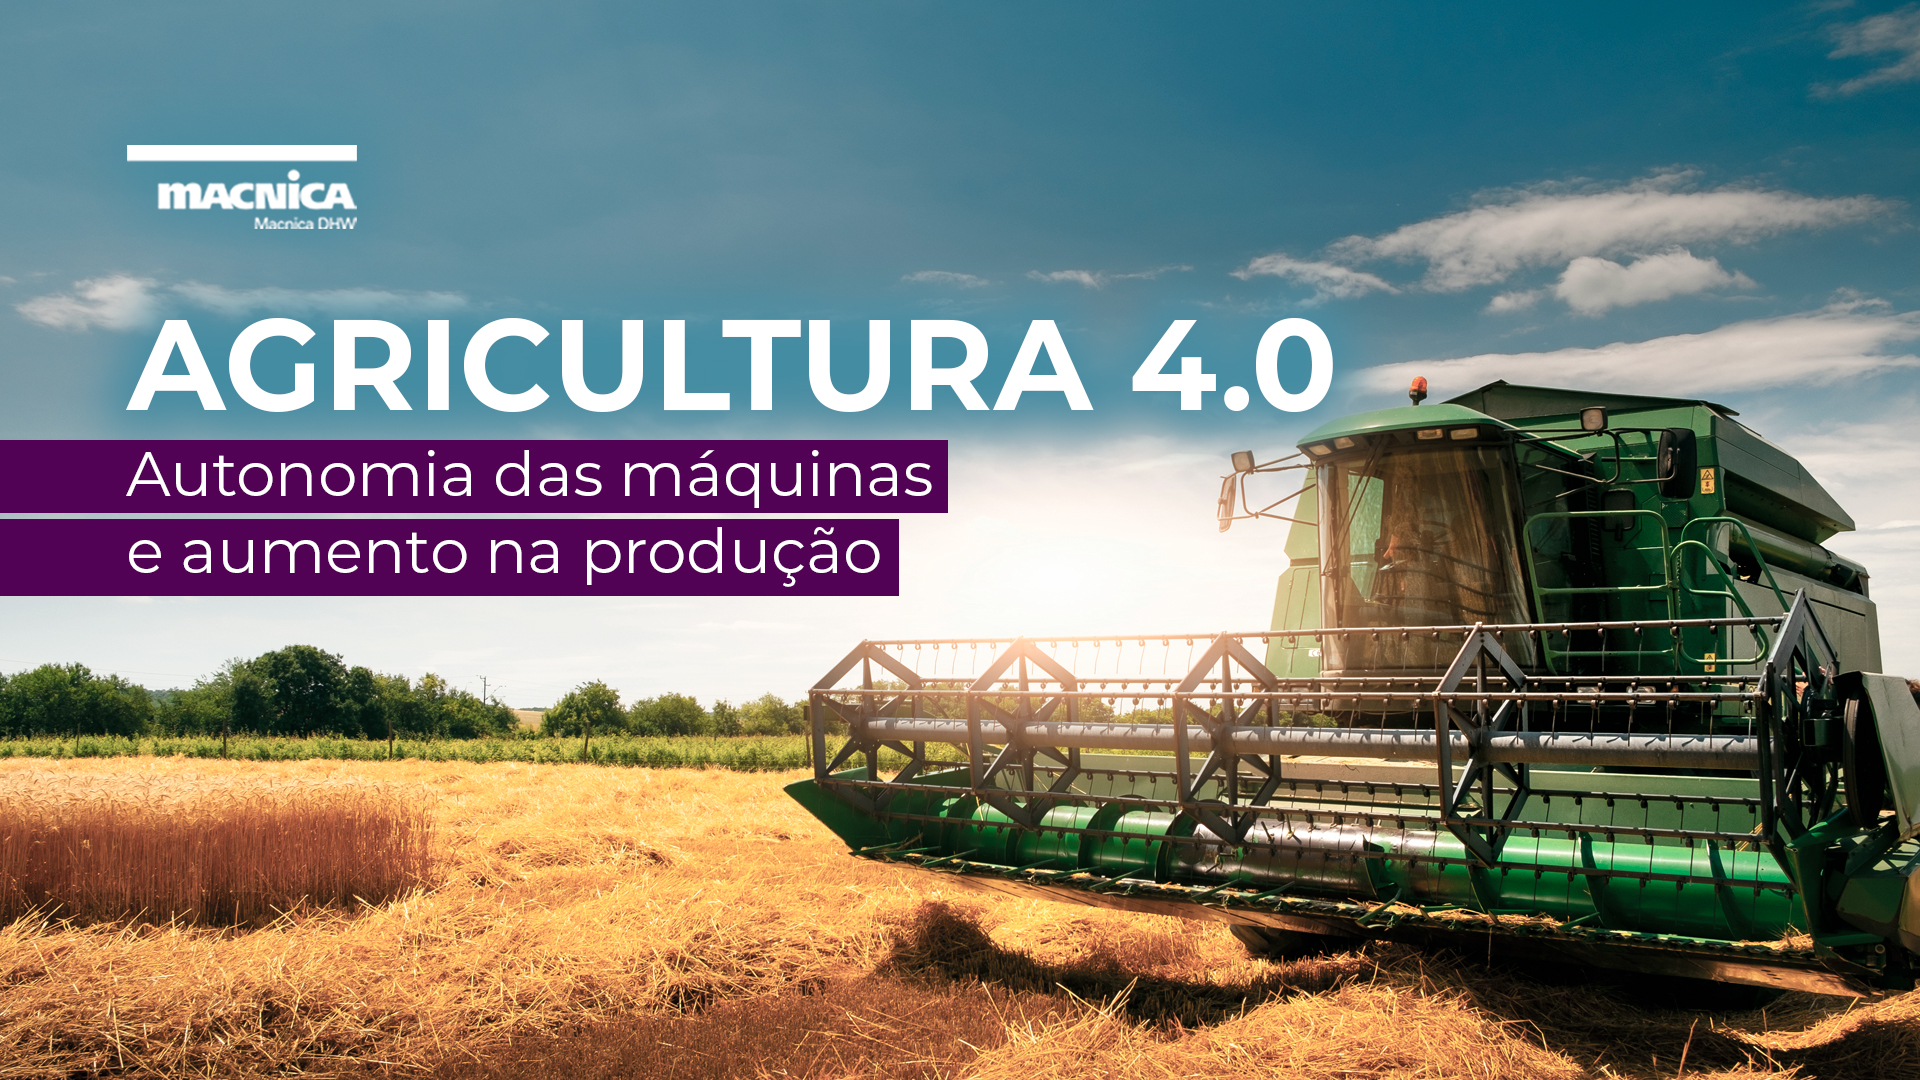 Você está visualizando atualmente Agricultura 4.0 para aumentar o rendimento da colheita